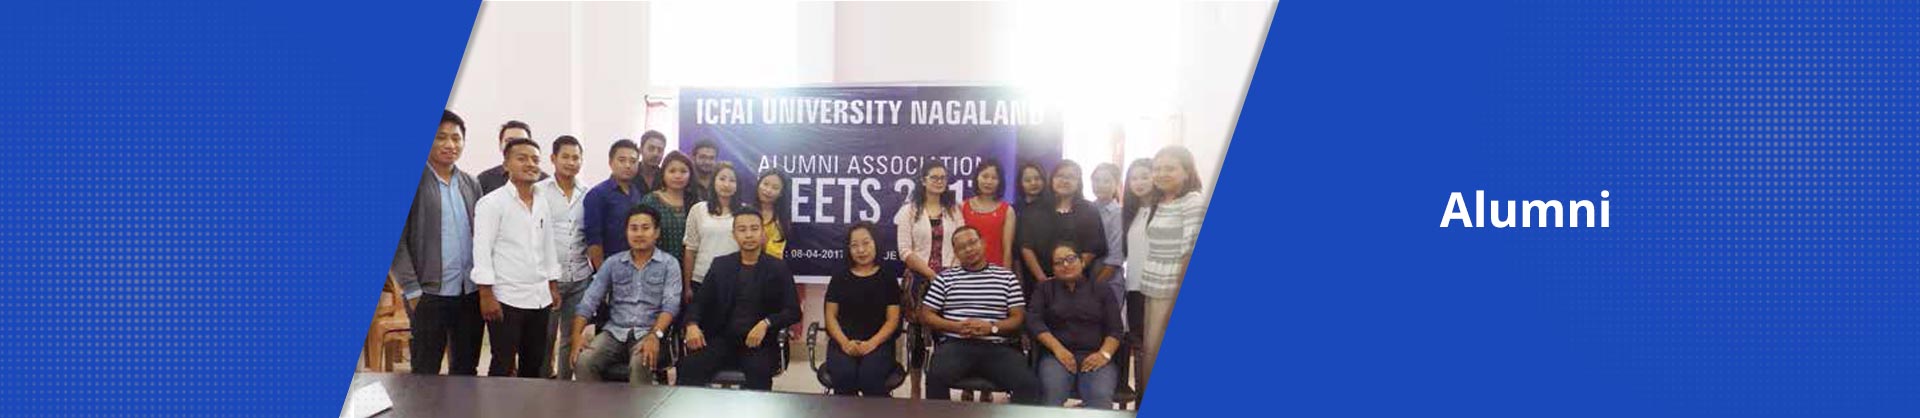 alumni-banner-img